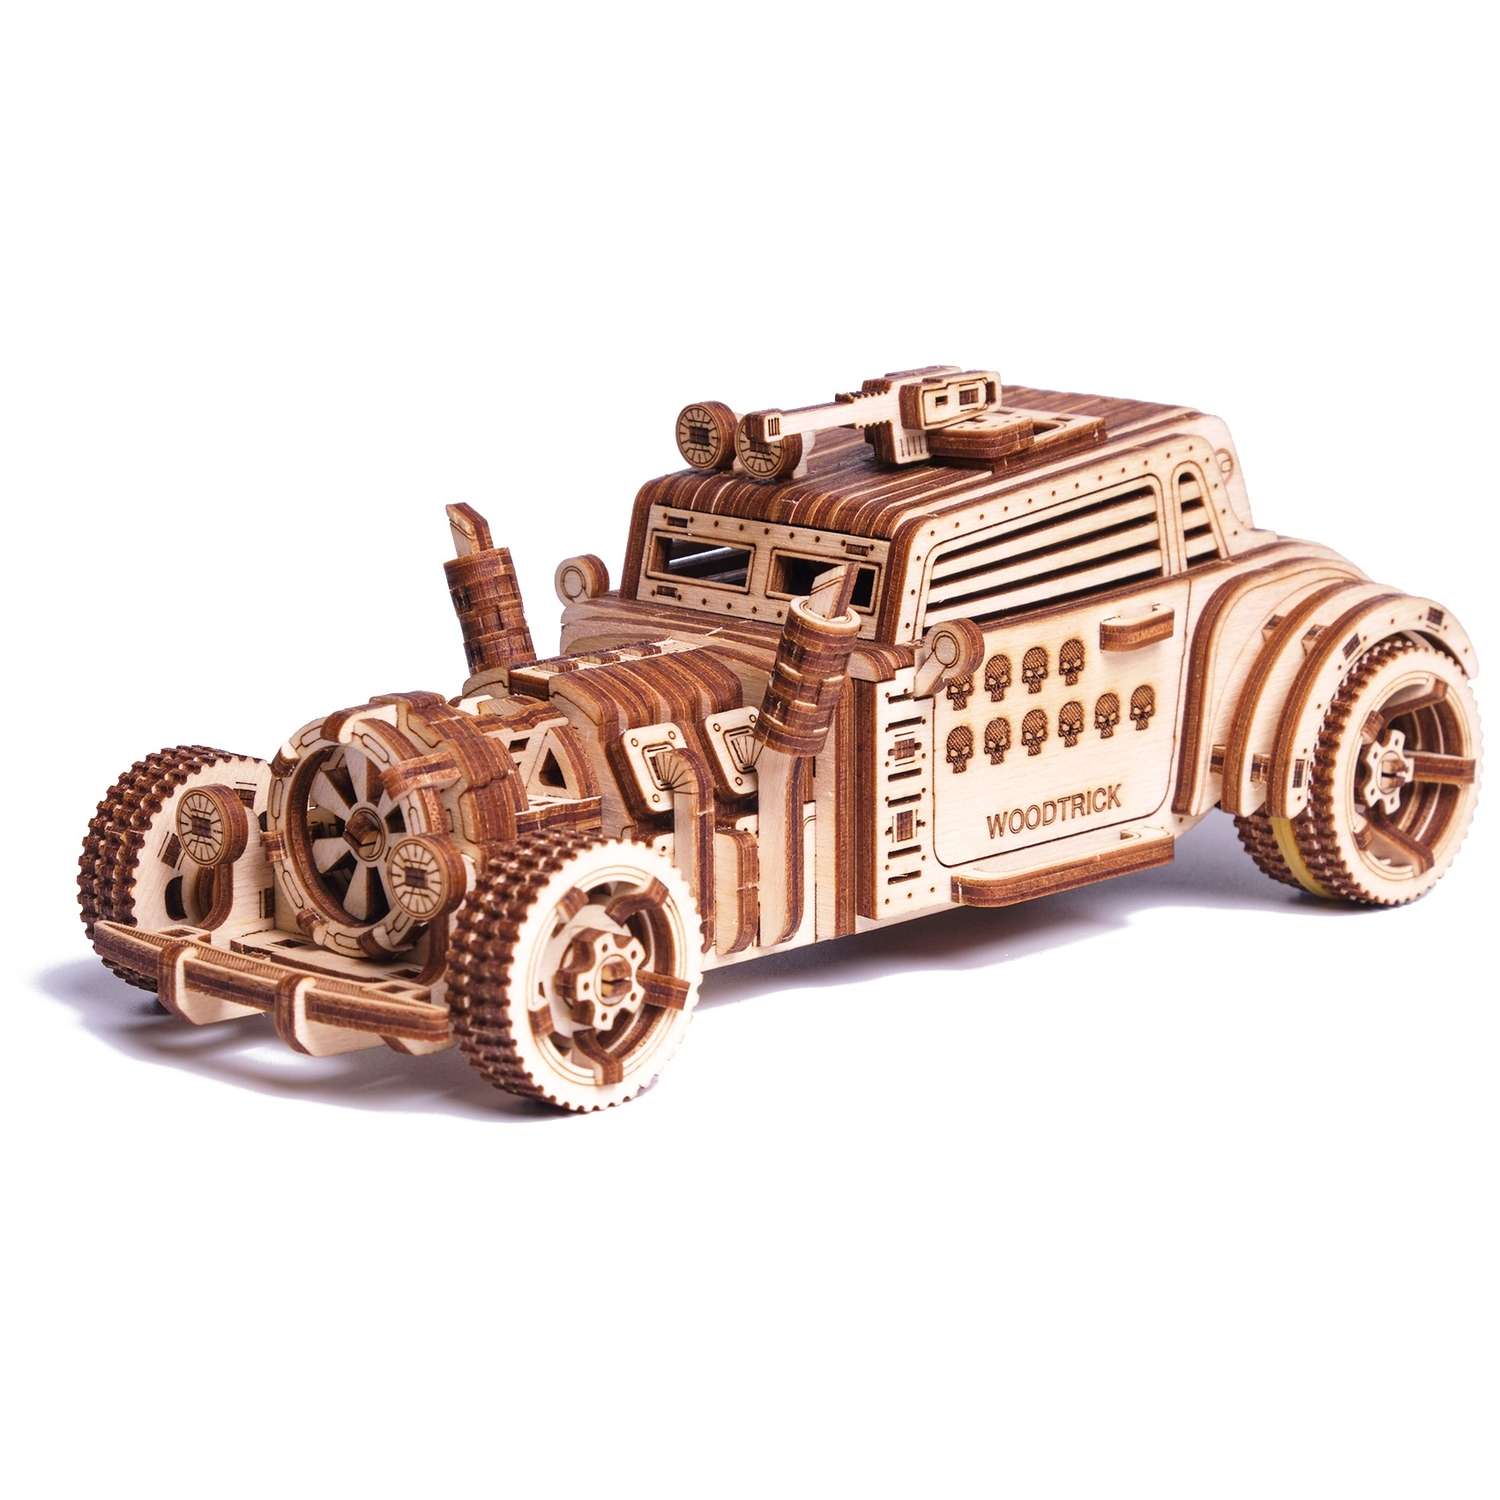 Сборная модель Wood Trick Механическая Машина Апокалипсис Родстер из дерева 1234-77 - фото 4